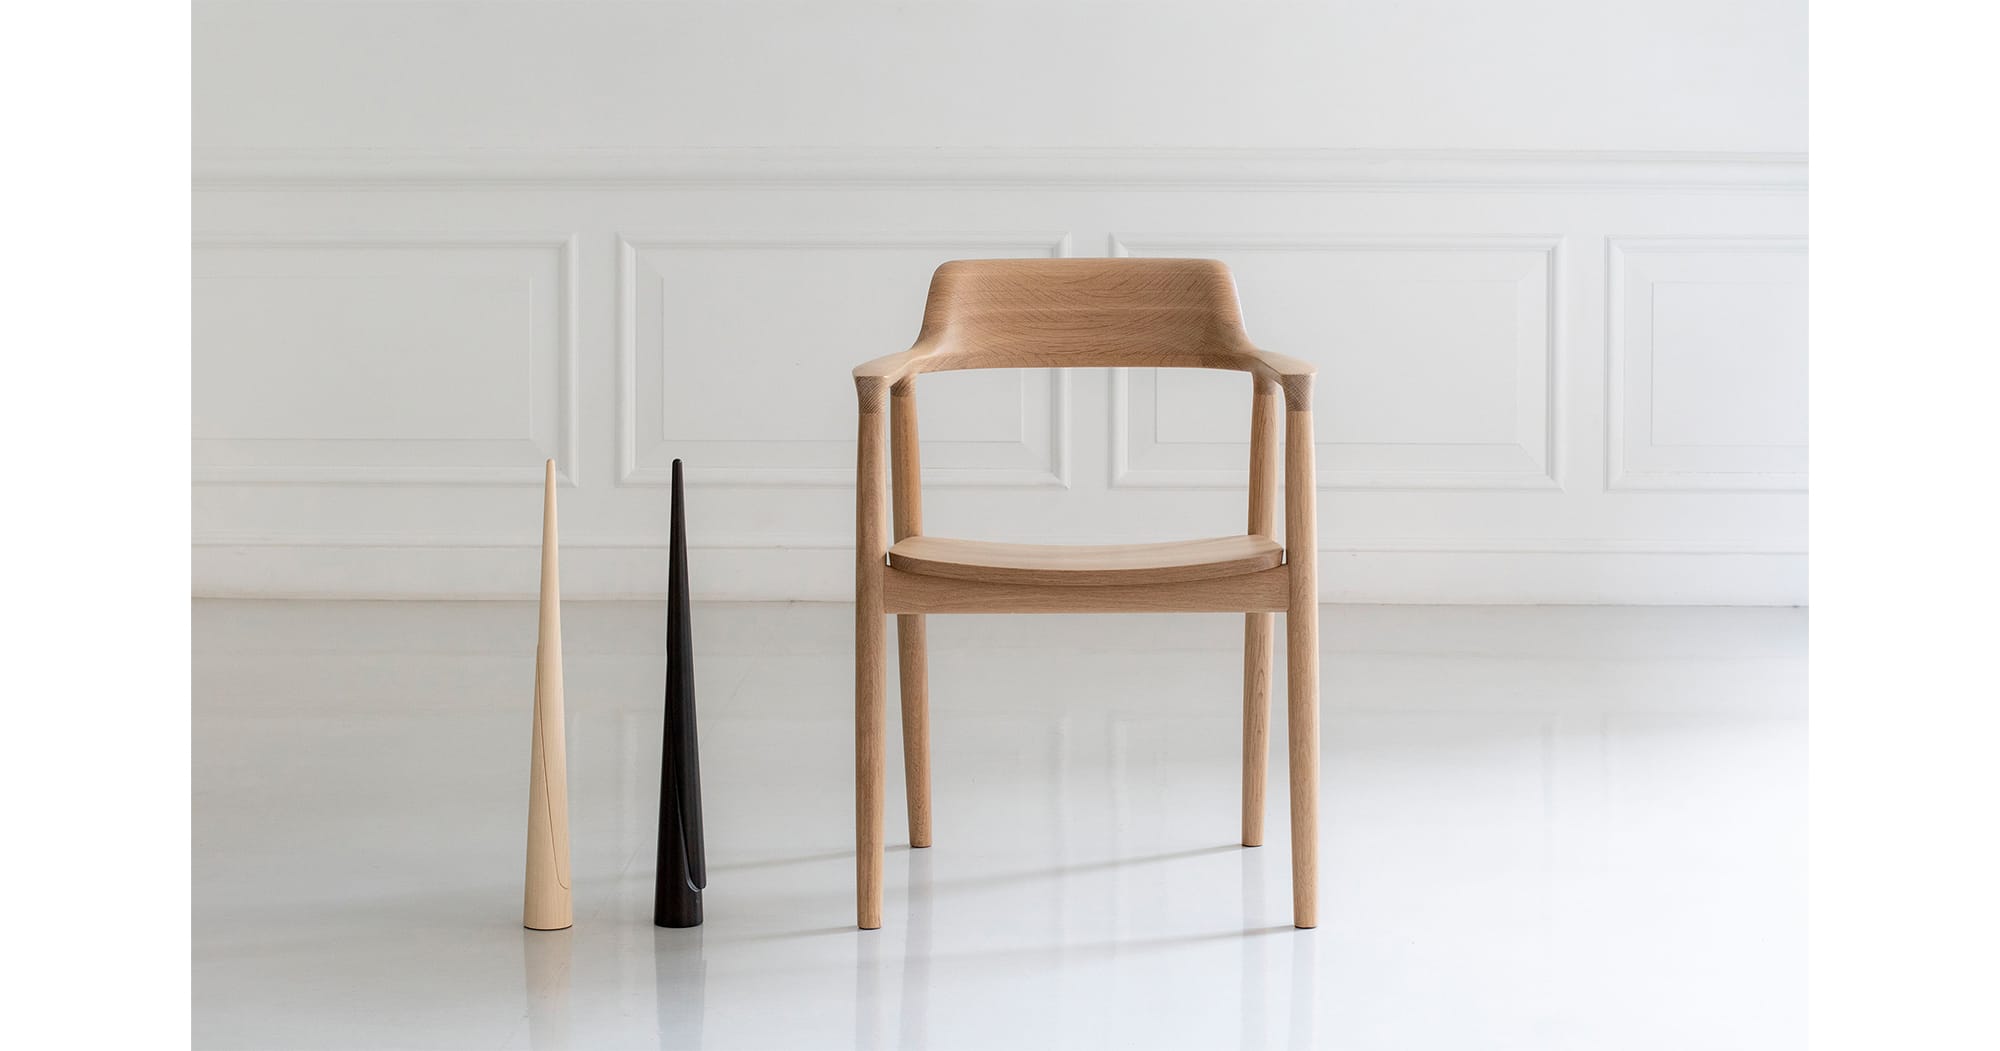 深澤直人デザイン、日本を代表する名作椅子「HIROSHIMA」アームチェアとnendoデザインの「Shoe-horn」。